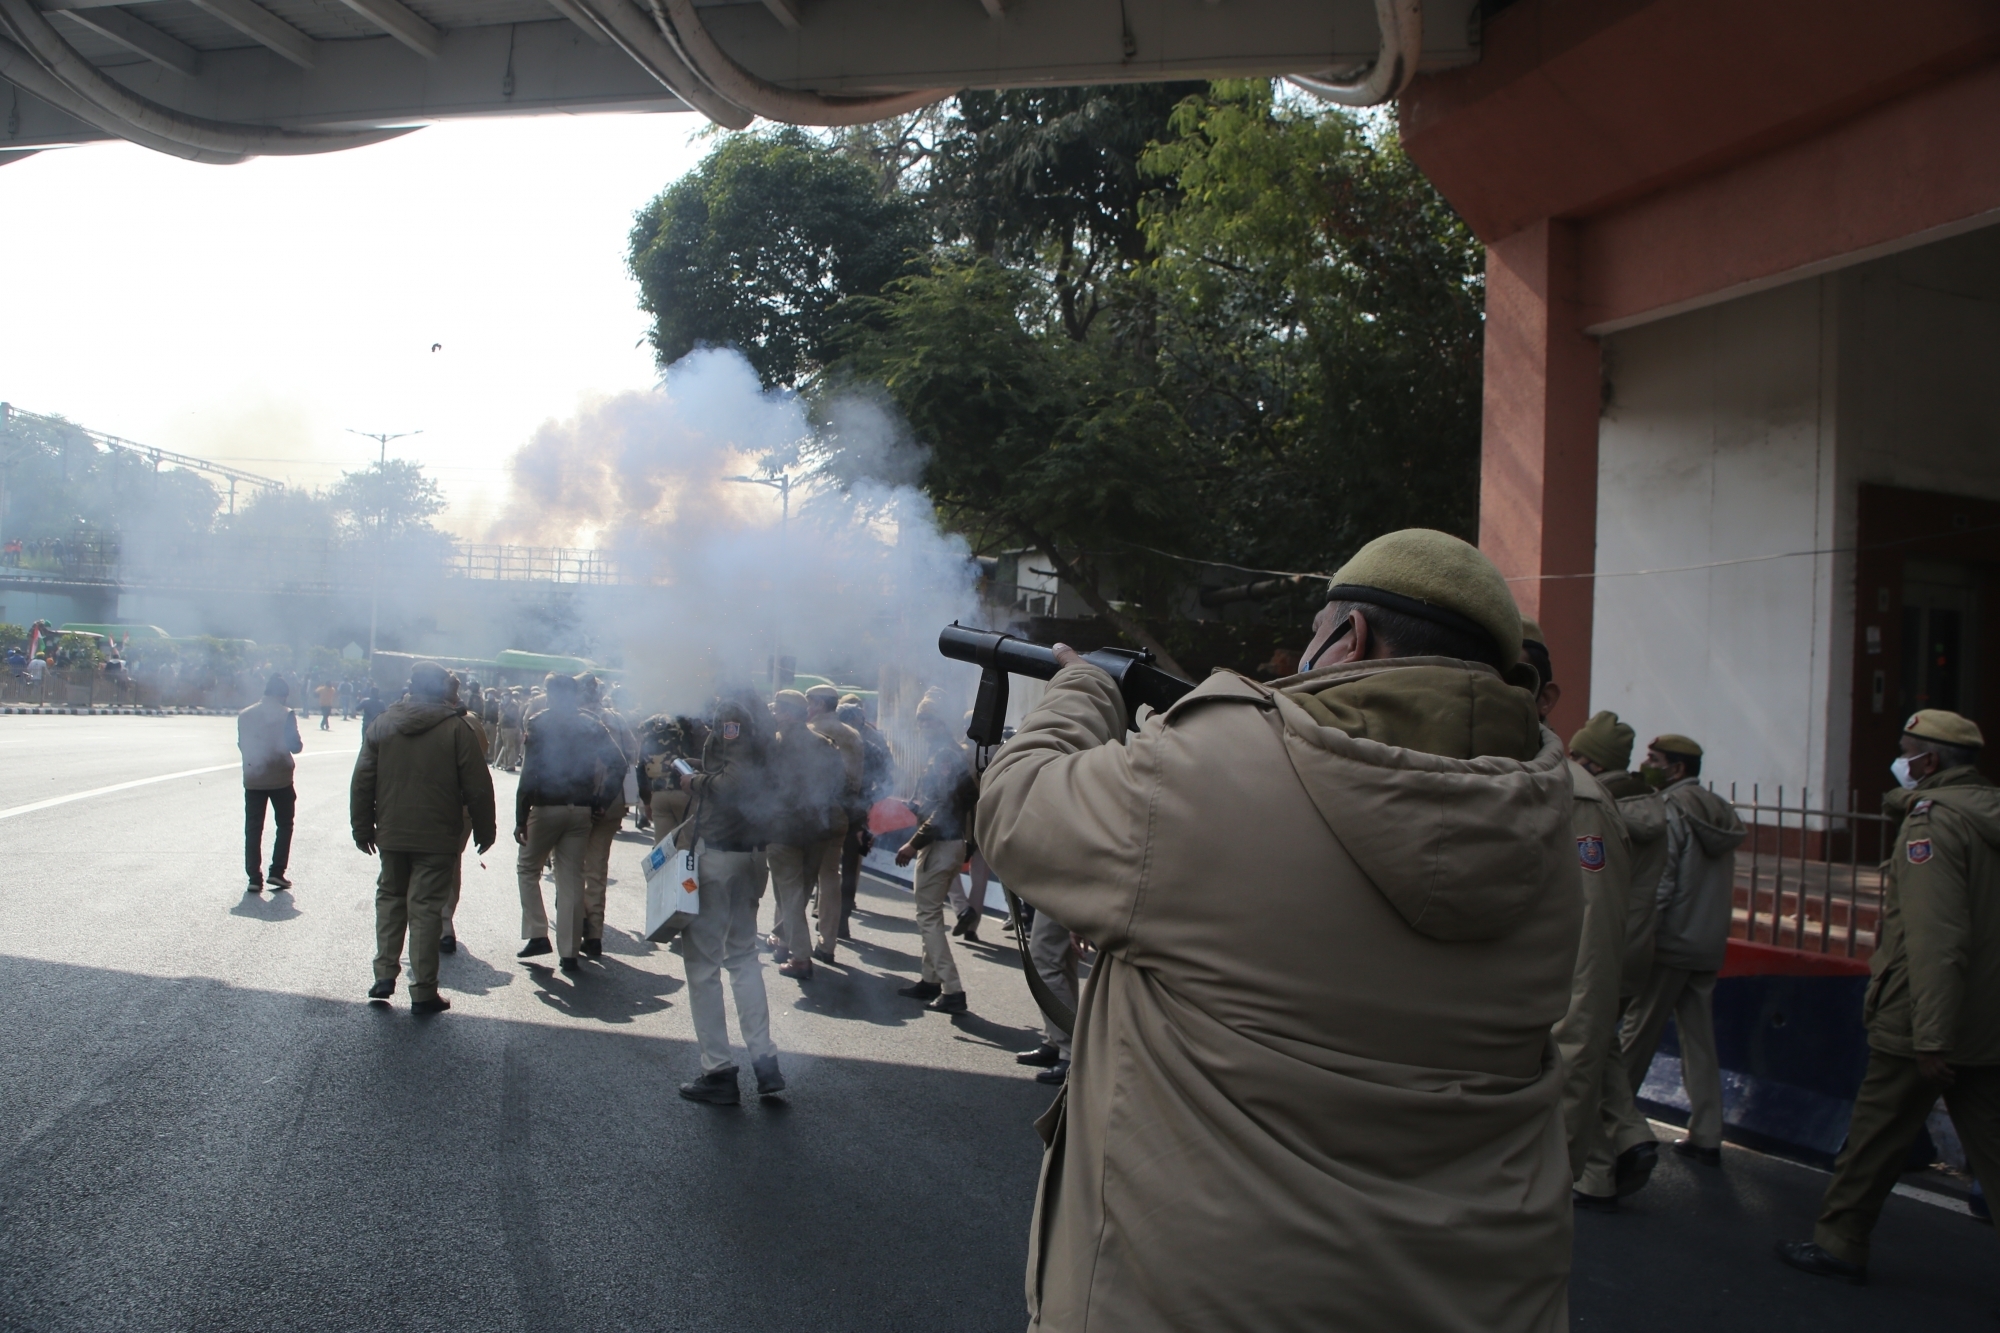 How Kisan Gantantra parade turned violent in Delhi